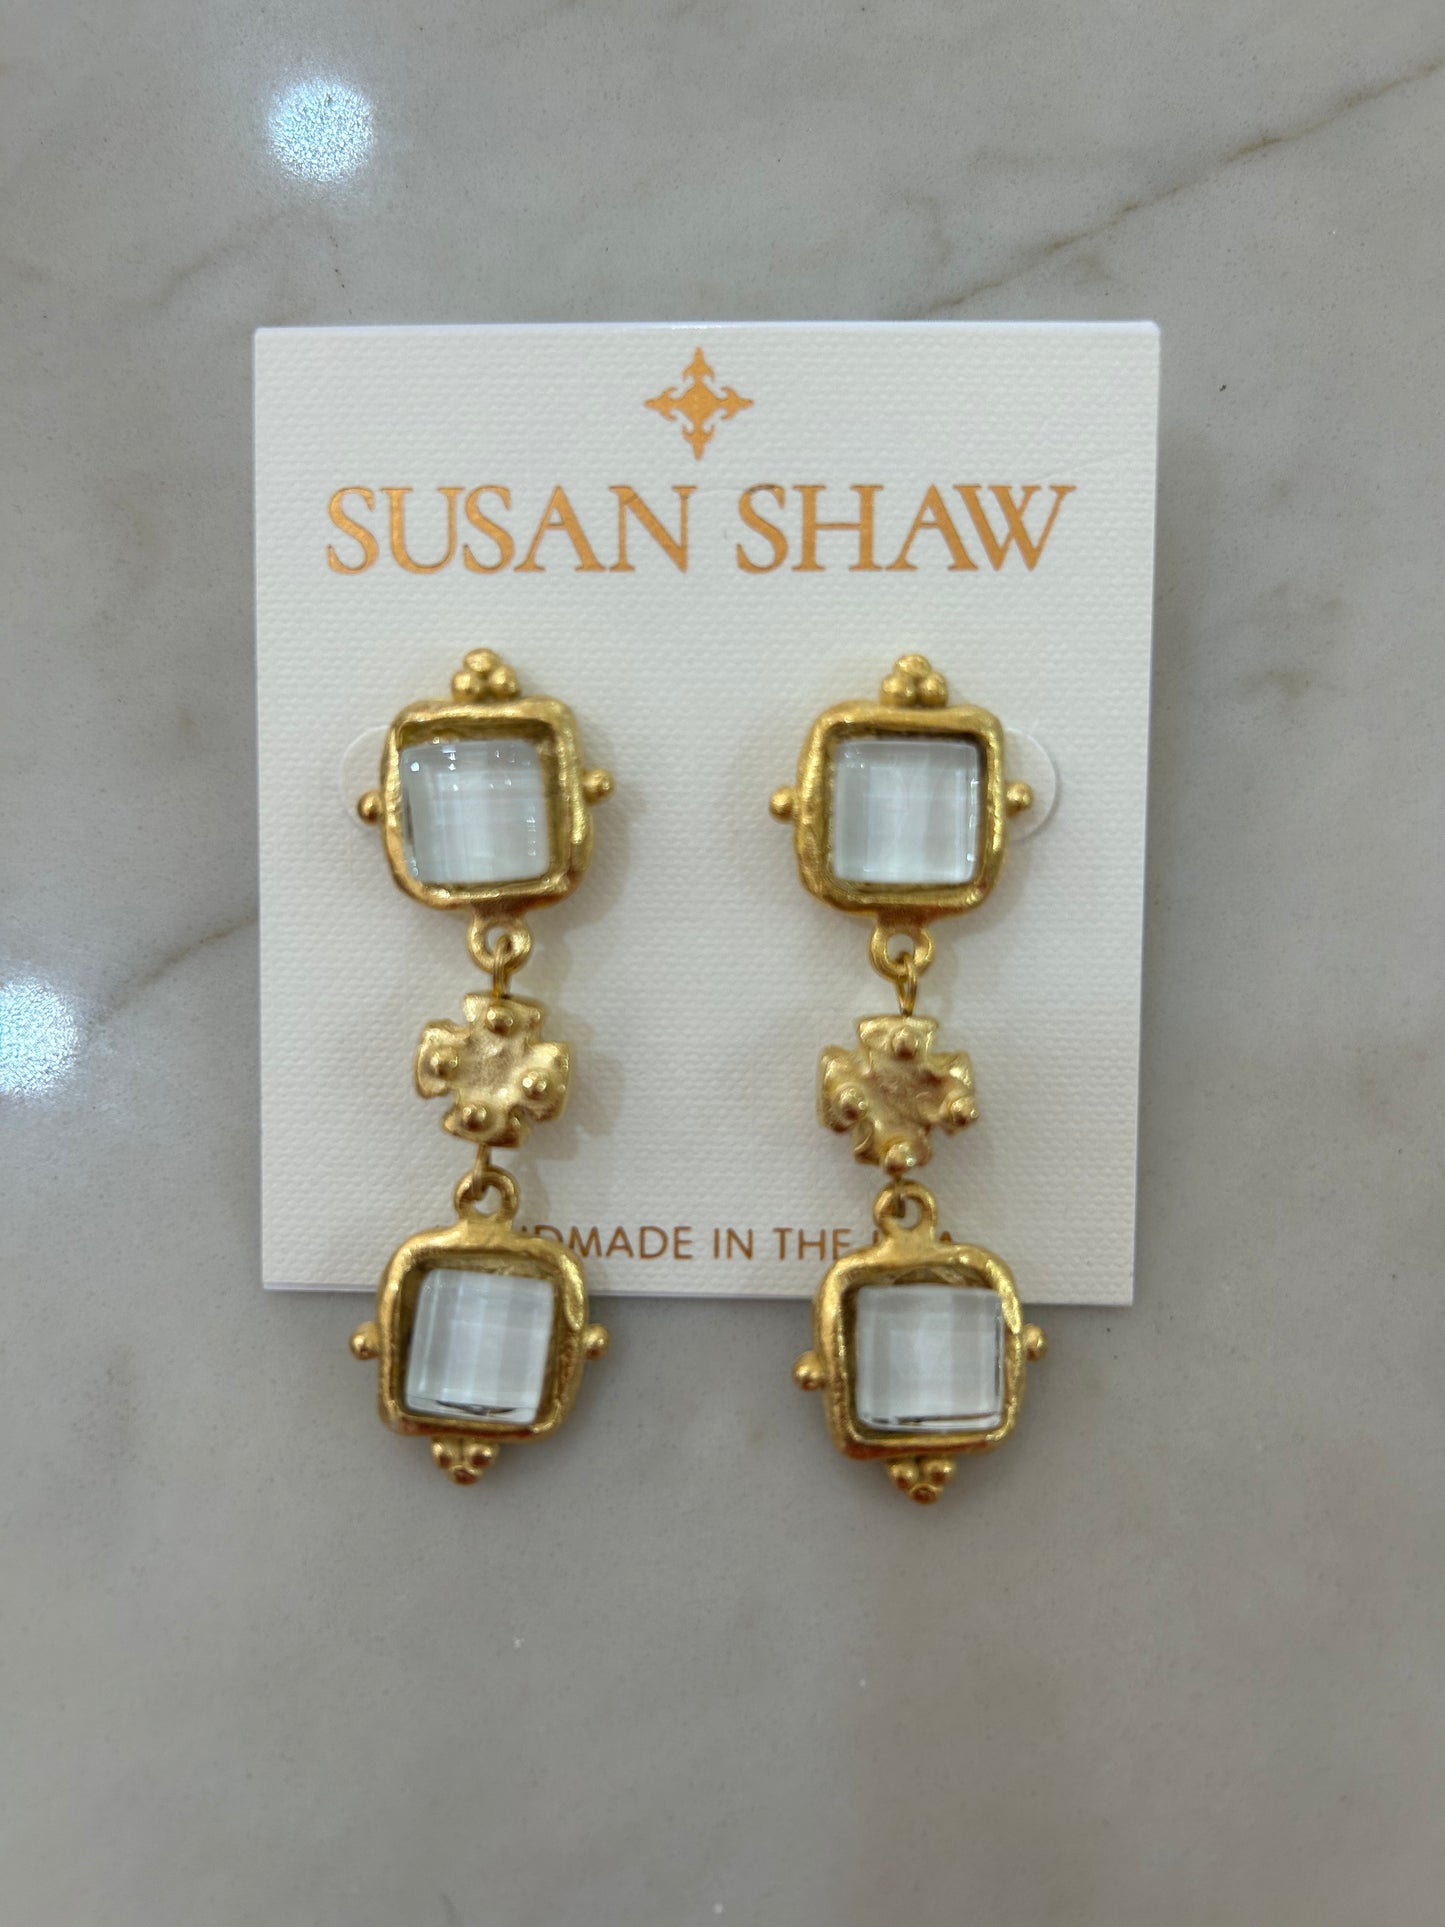 Susan Shaw Charlotte Tier Earrings